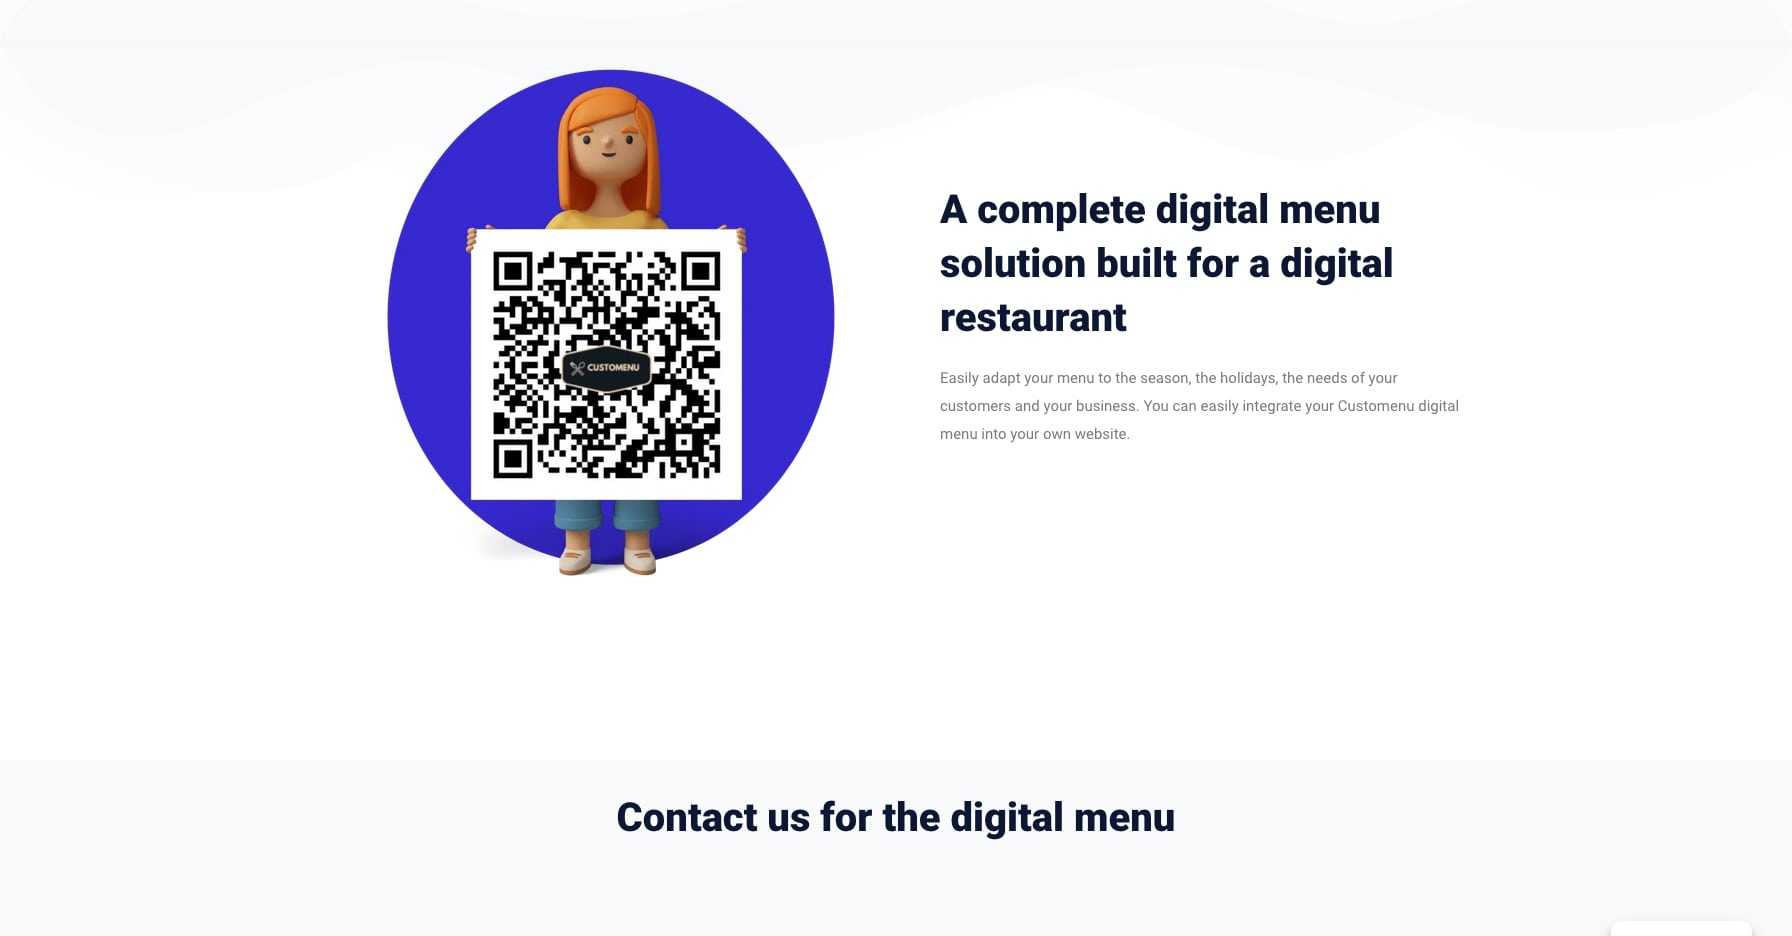 Pentru a oferi o experiență completa, am oferit tuturor posibilitatea de a scana un cod qr demo, pentru a înțelege intregul proces de afișare al meniului digital pentru restaurante.